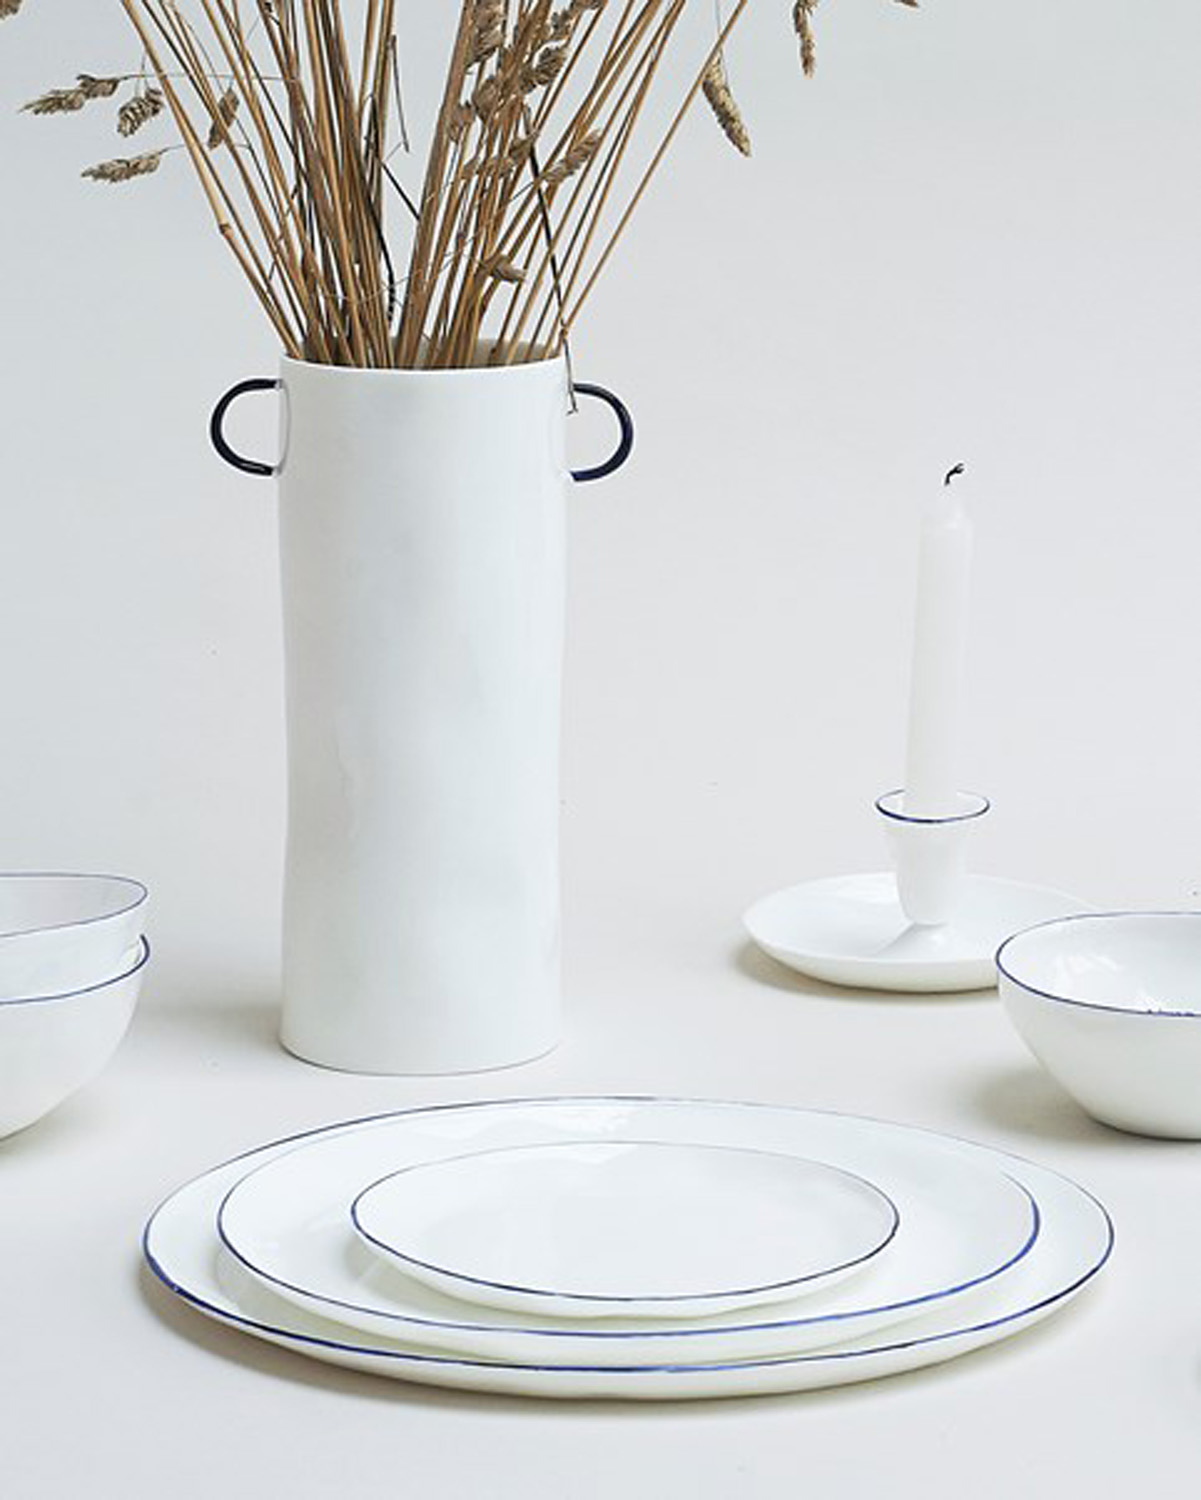 Plates by Feldspar - artisinal ceramics handmade in the UK